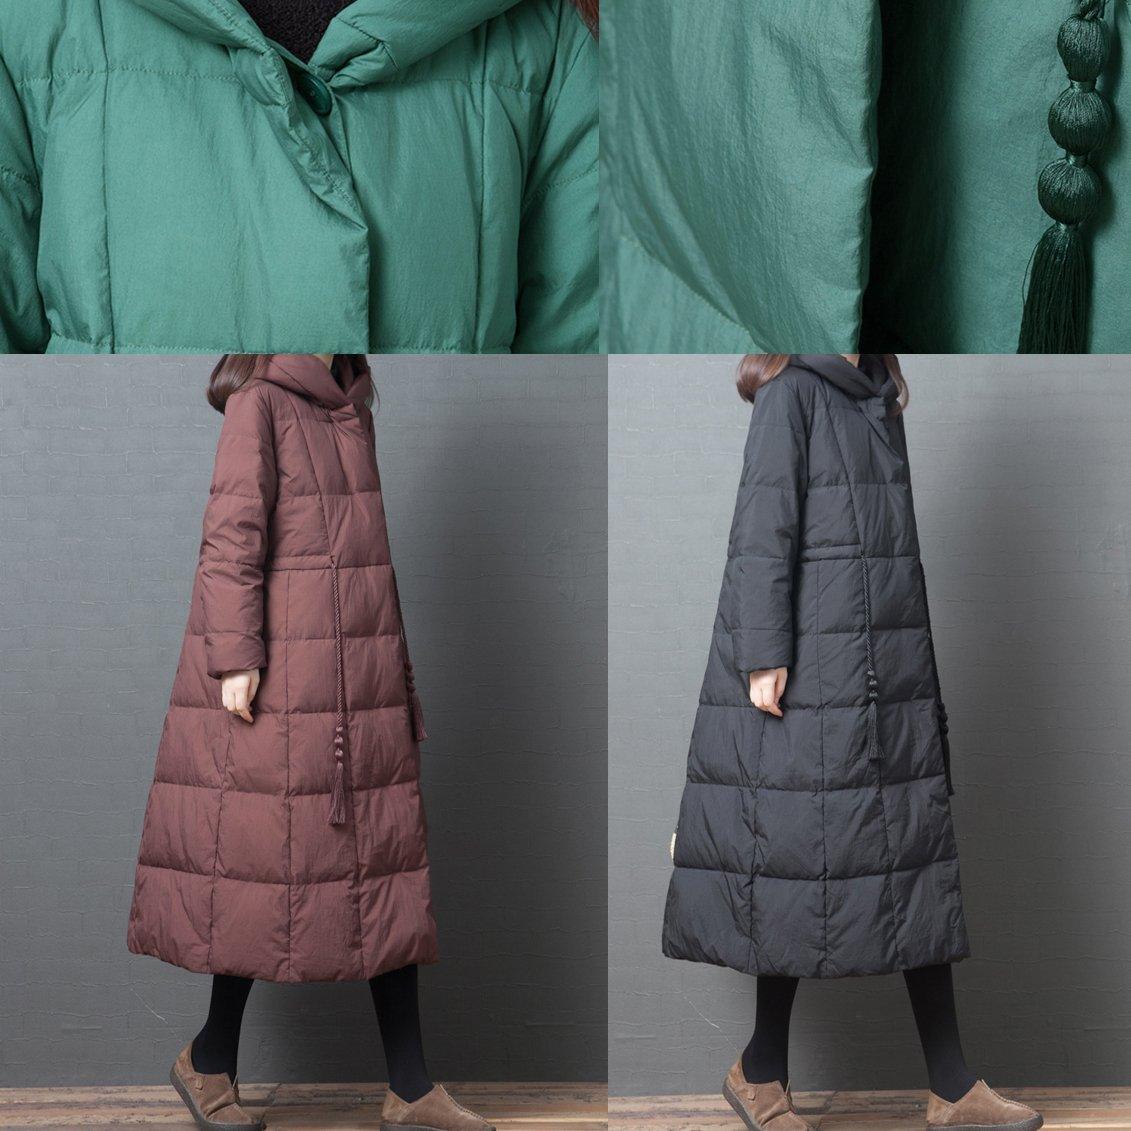 women black down coat winter plus size jackets winter hooded pockets outwear - Omychic